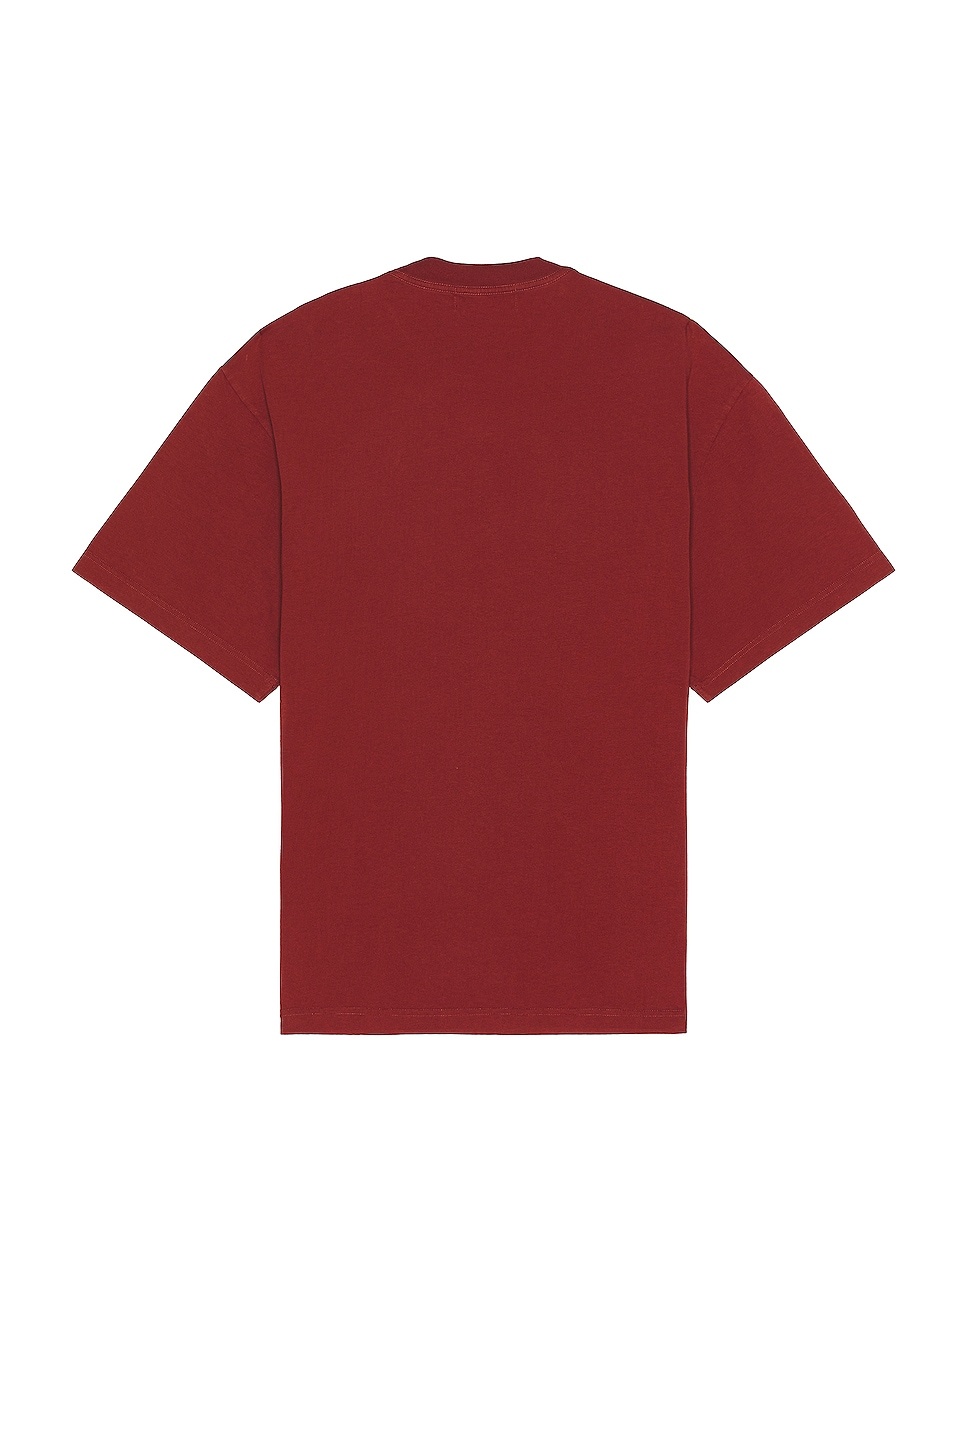 Ballchain T-shirt - 2